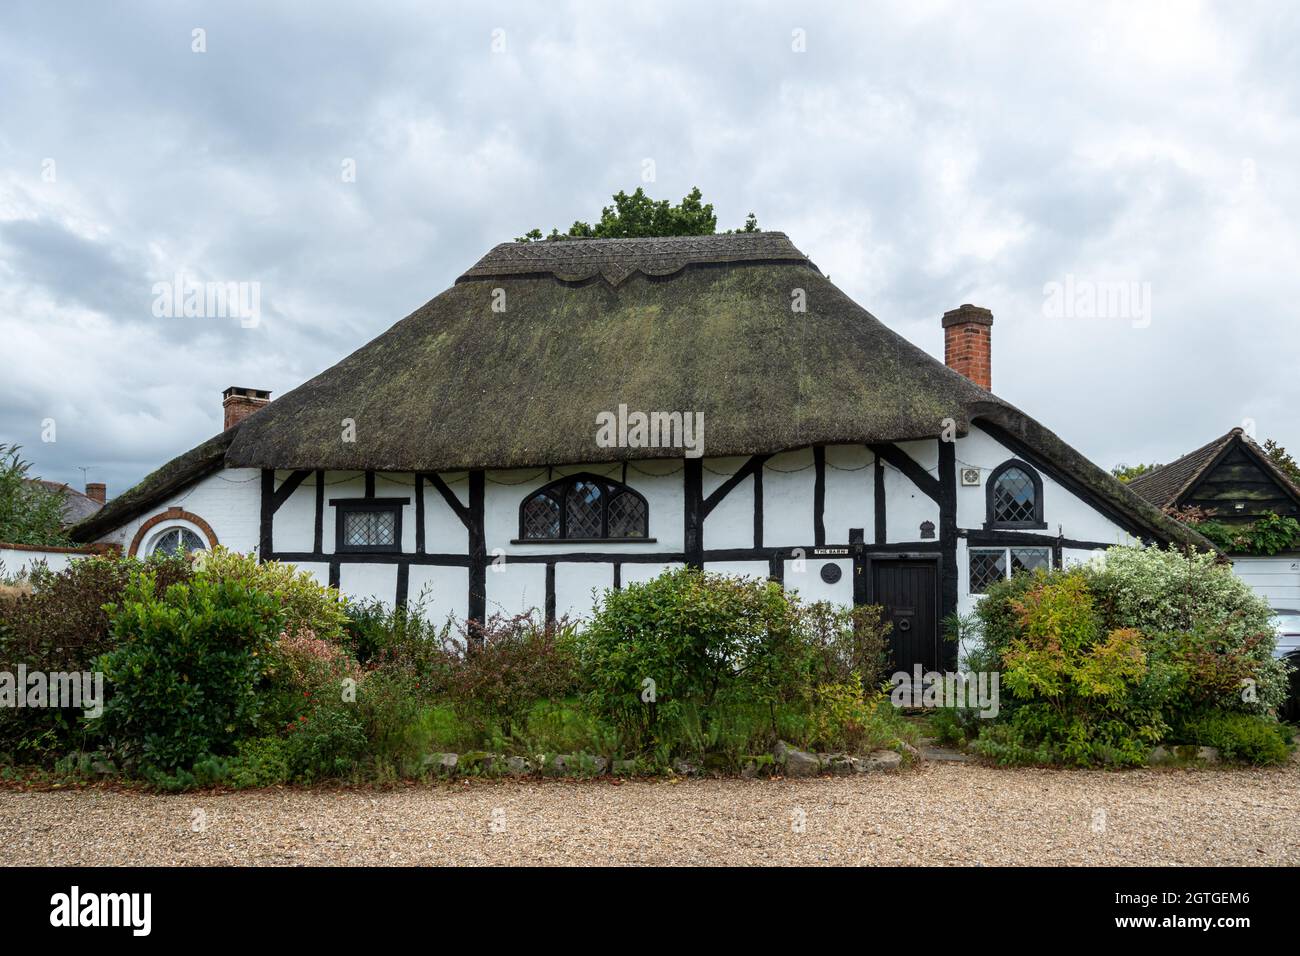 The Barn, un bâtiment classé Grade II du XVIe siècle à Frimley Green, Surrey, Angleterre, Royaume-Uni. Banque D'Images